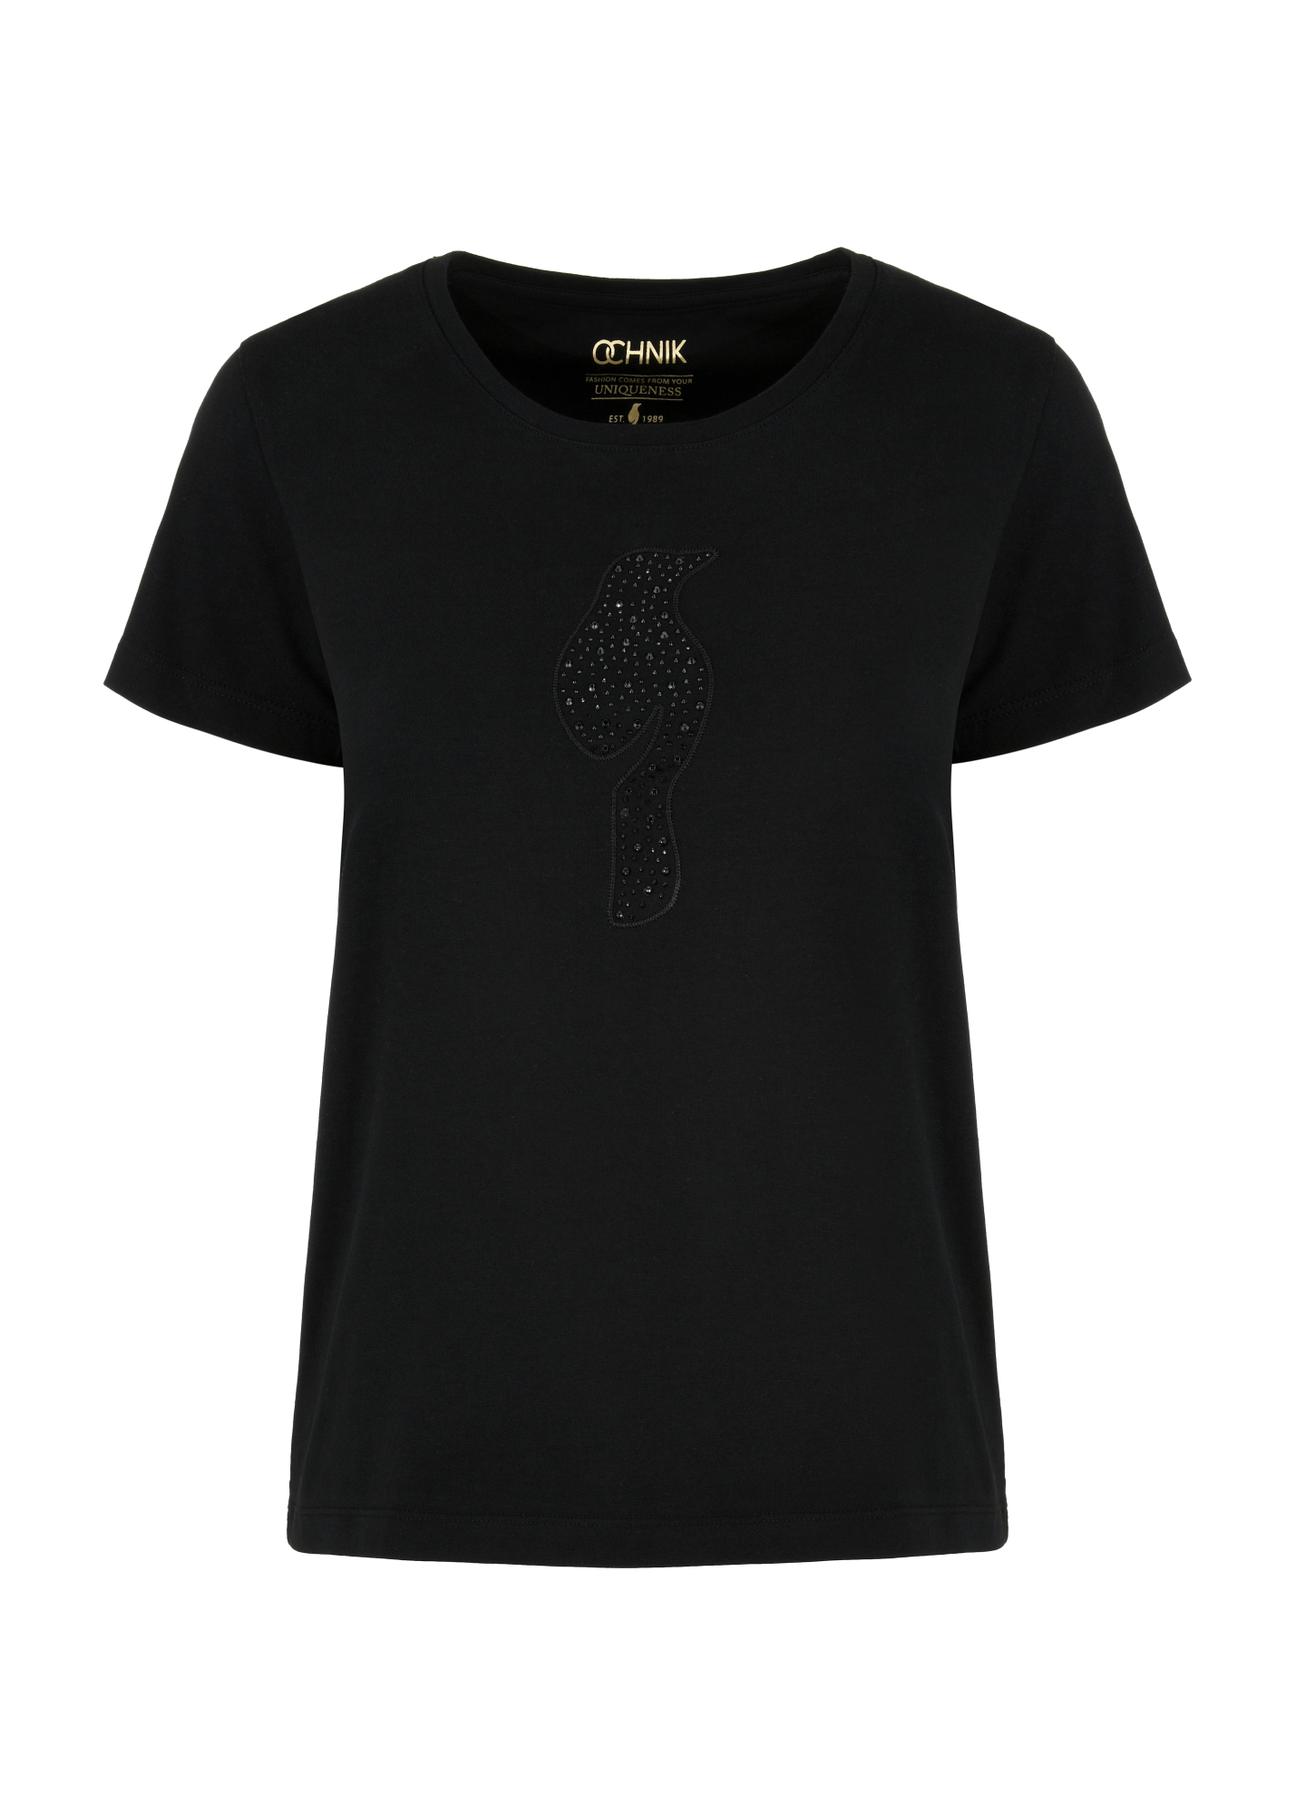 T-shirt damski czarny z ozdobną wilgą TSHDT-0123-99(W24)